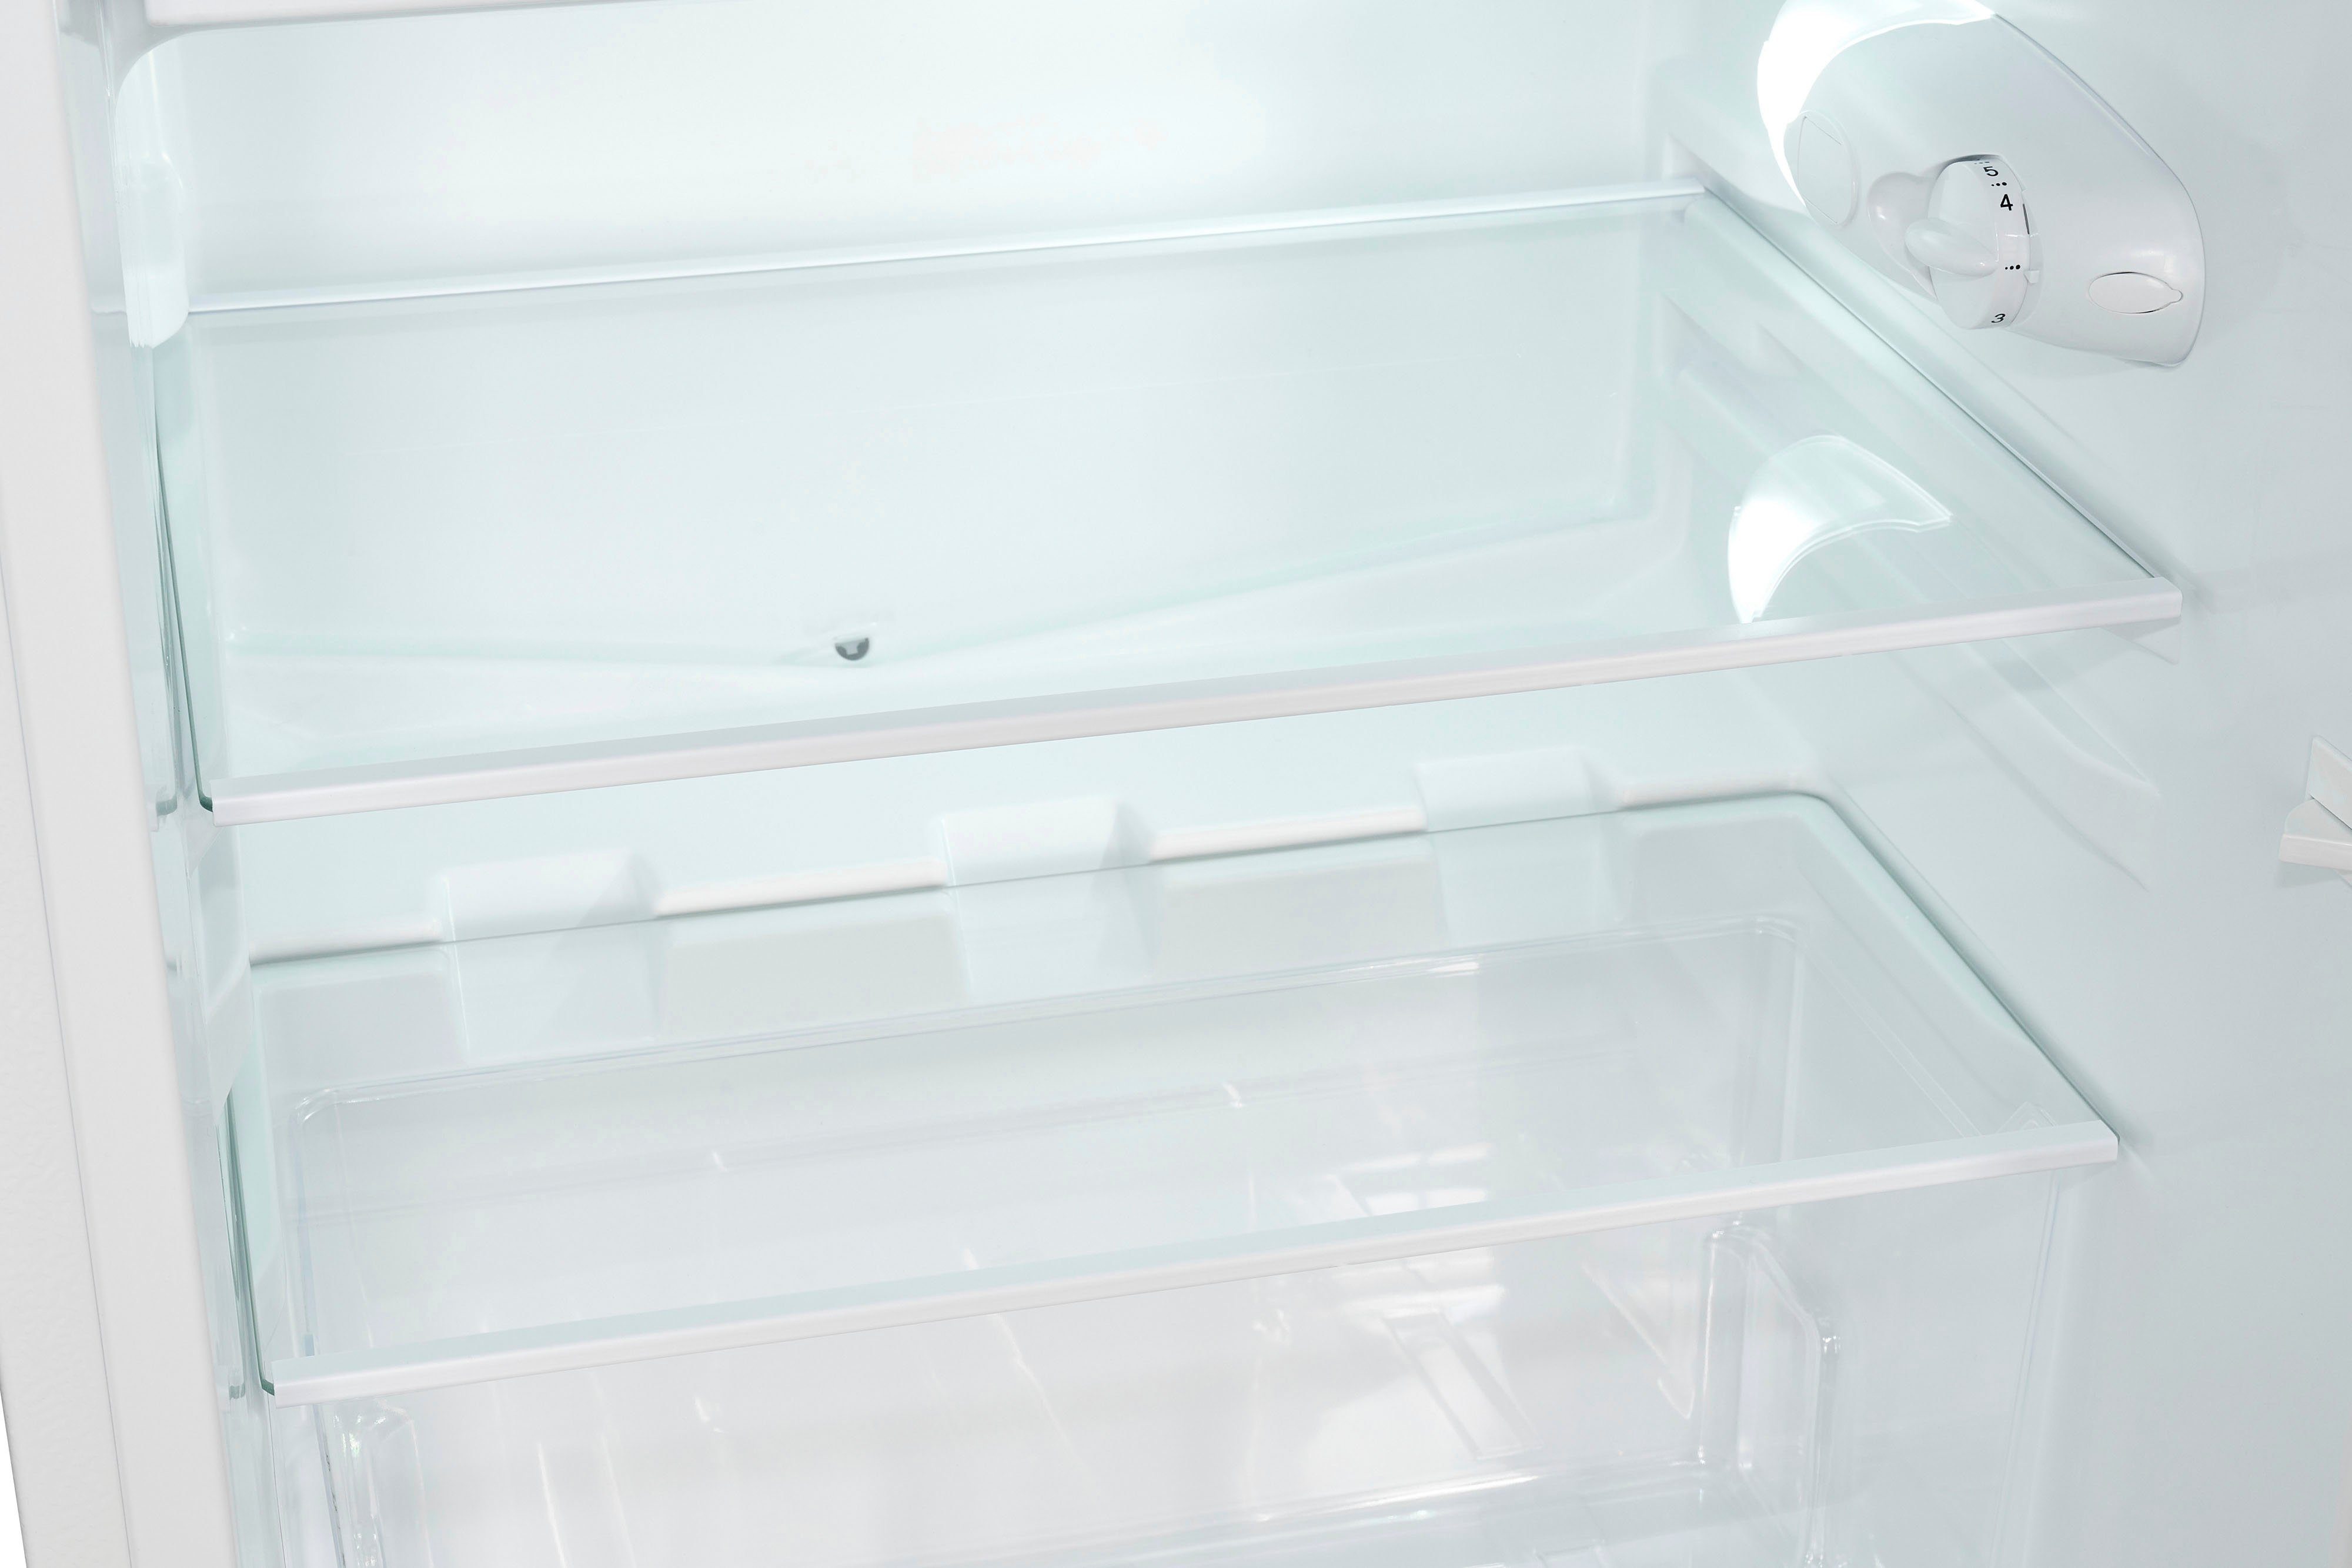 Kühlschrank KS16-4-051C, breit weiß cm cm 84,5 exquisit hoch, 54,9